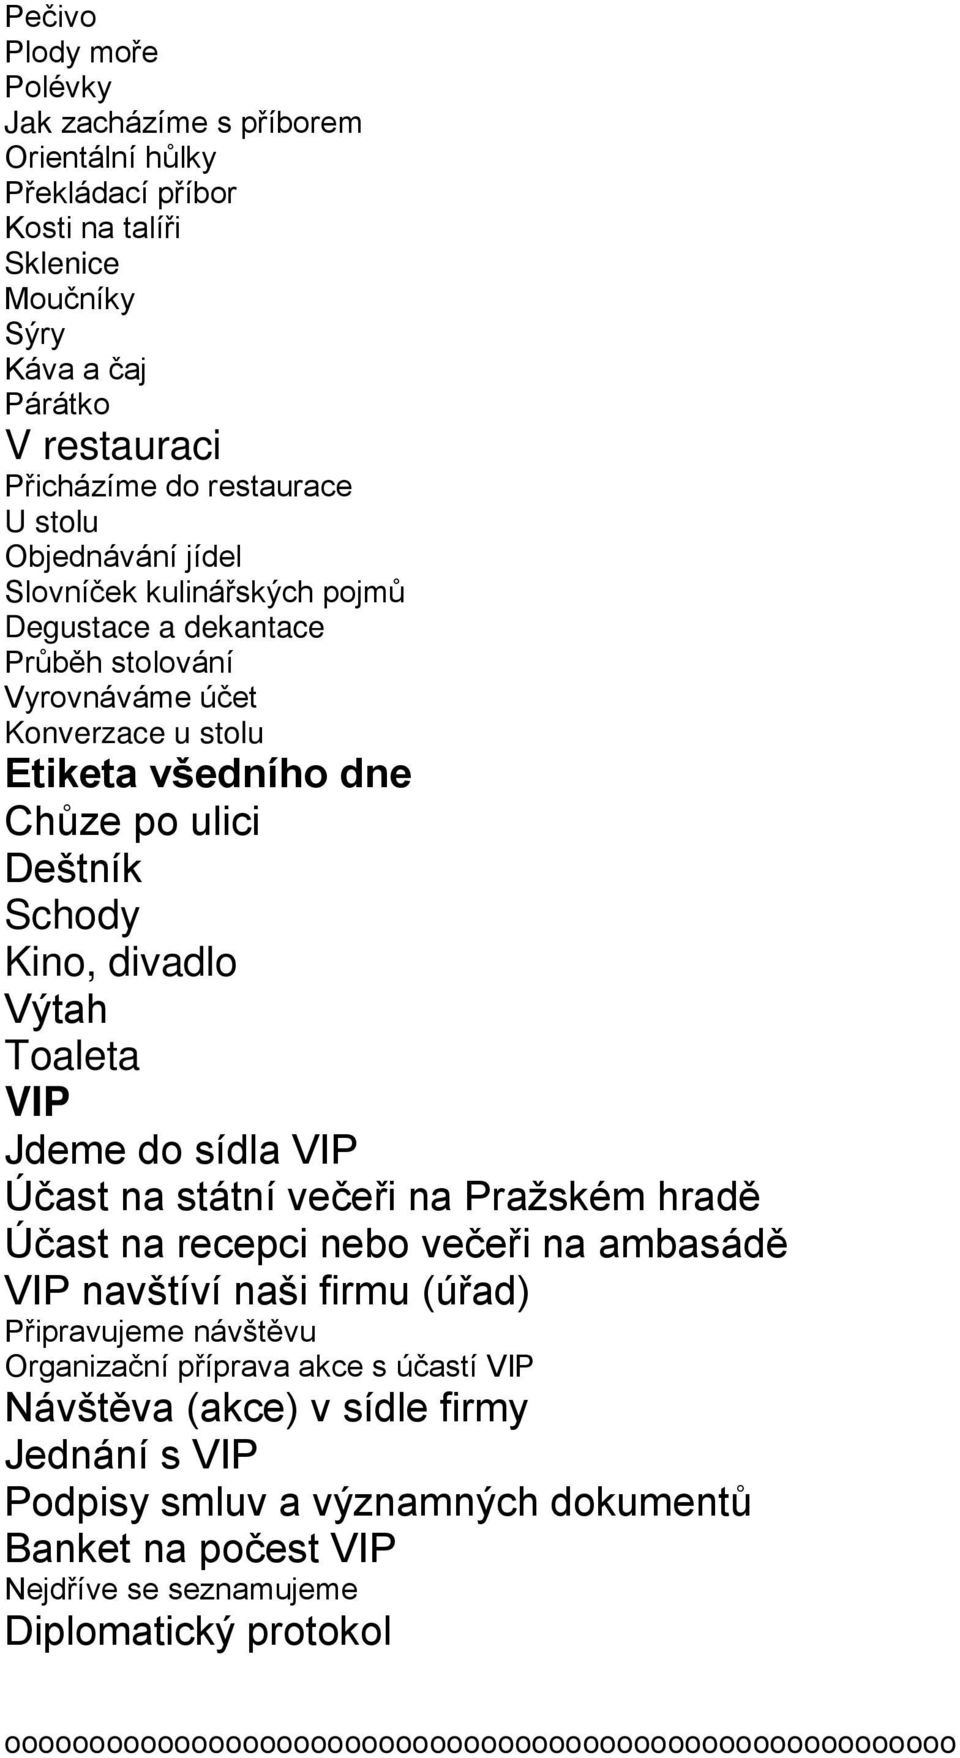 Toaleta VIP Jdeme do sídla VIP Účast na státní večeři na Pražském hradě Účast na recepci nebo večeři na ambasádě VIP navštíví naši firmu (úřad) Připravujeme návštěvu Organizační příprava akce s